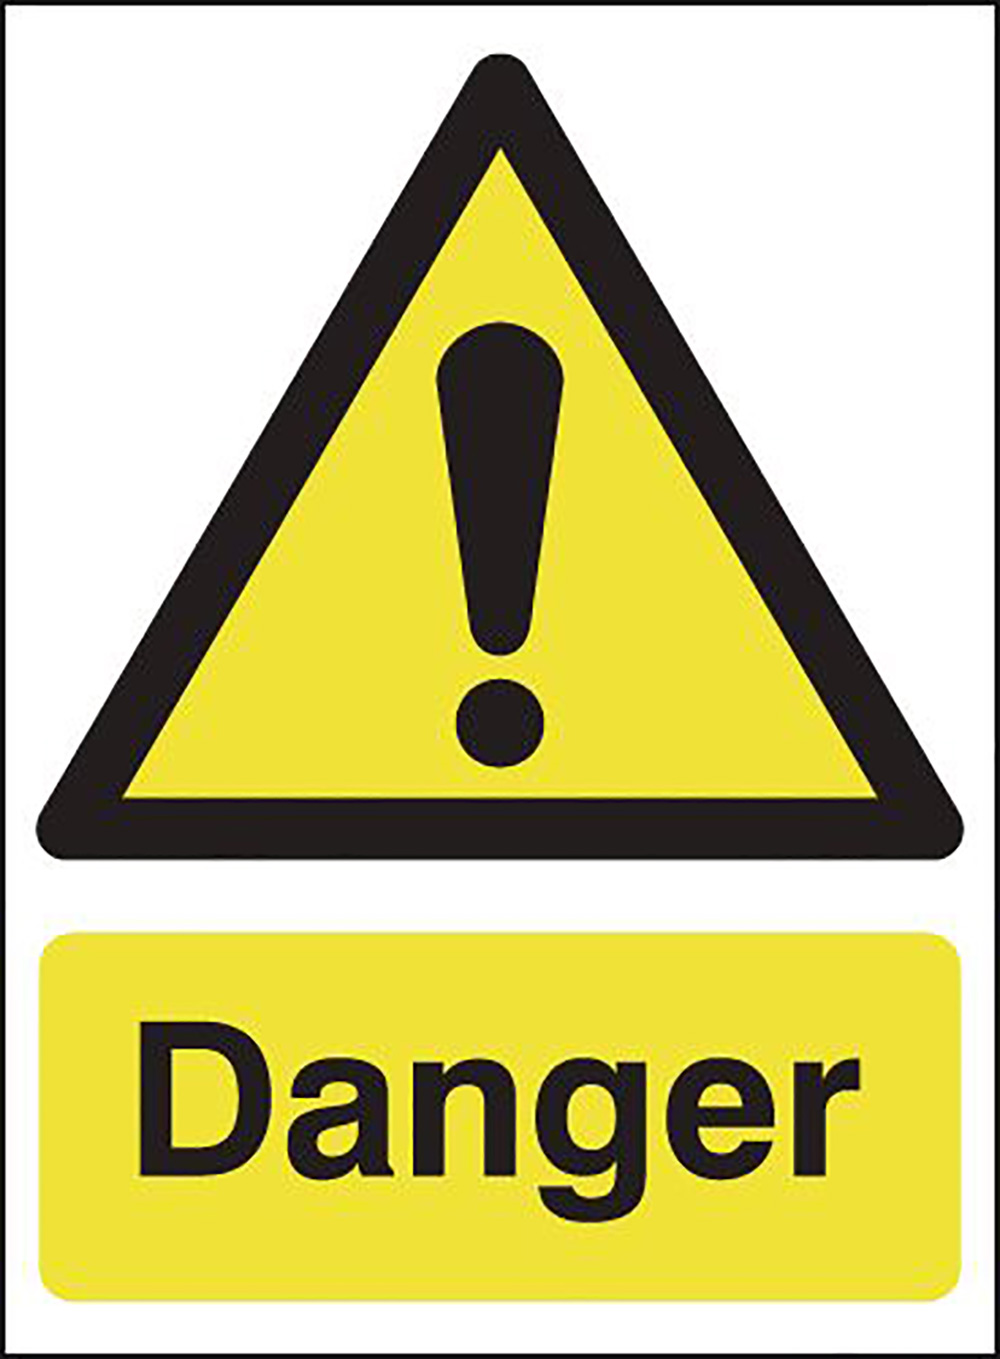 Danger 297x210mm Safety Sign